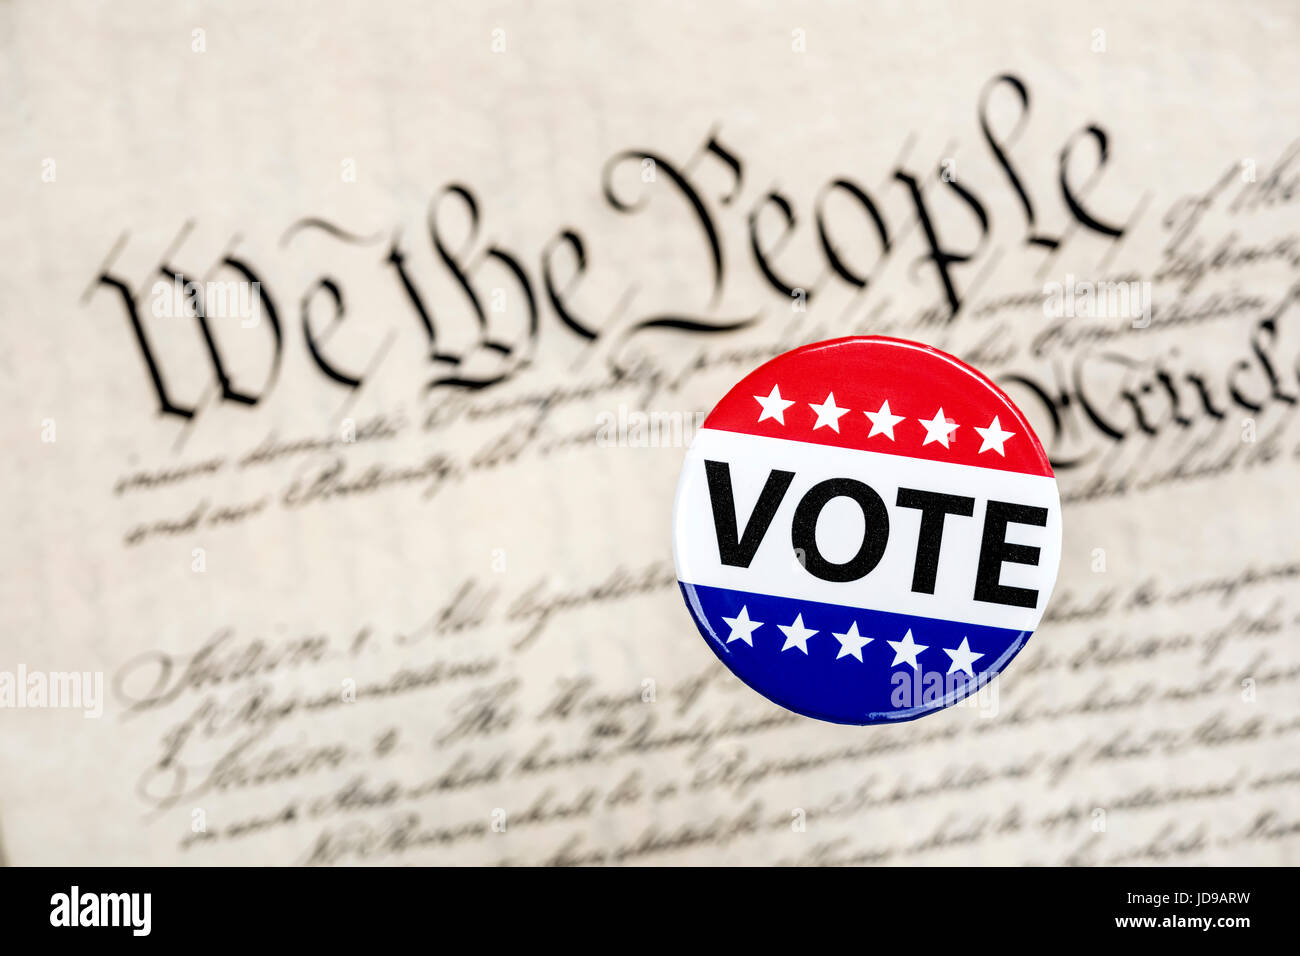 Eine Abstimmung Abzeichen schwebt über der Verfassung als Symbol für die amerikanische Staatsbürgerschaft konstitutionelle Wahlrecht. Stockfoto